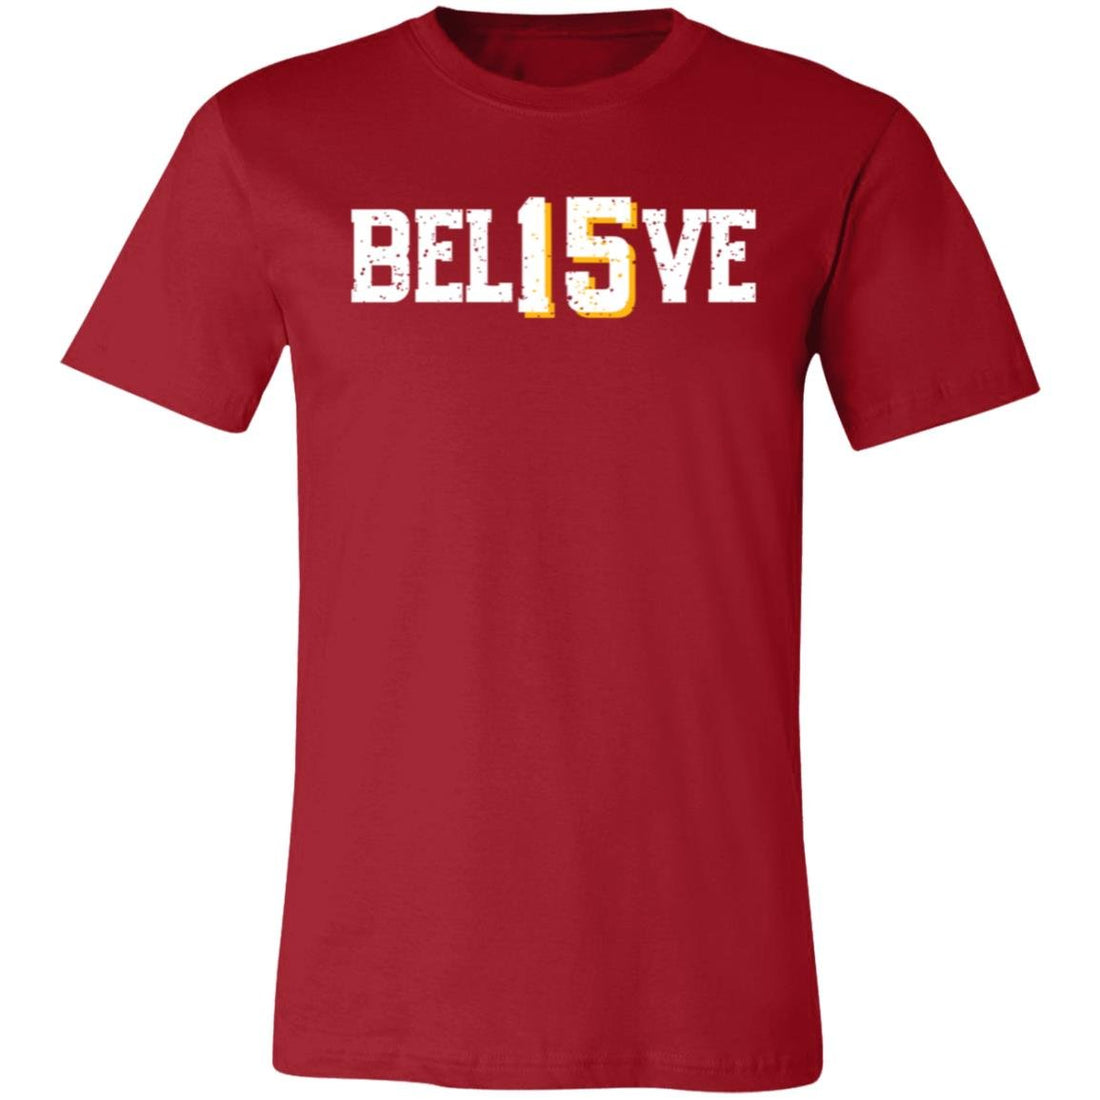 BEL15VE T-Shirt - T-Shirts - Positively Sassy - BEL15VE T-Shirt